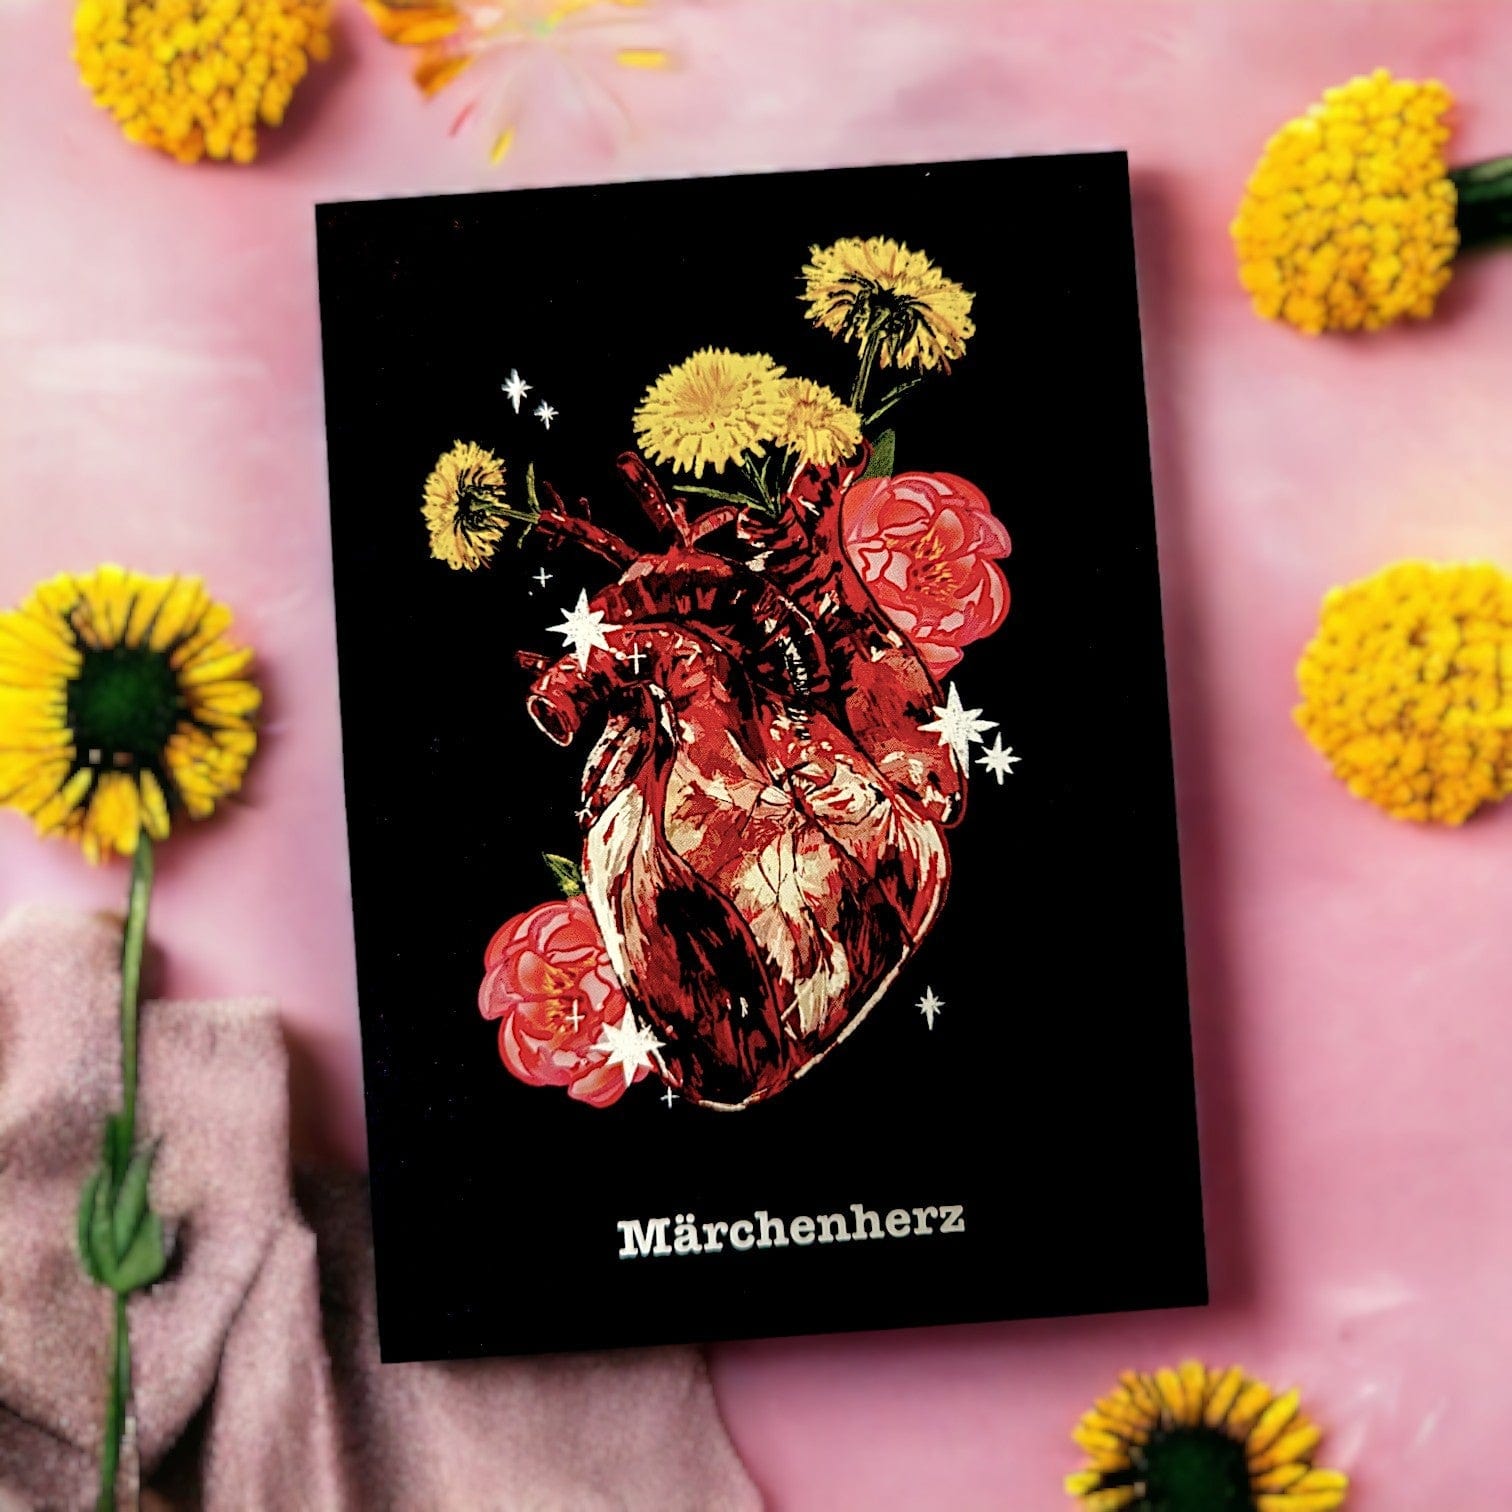 Märchenherz Postkarte | RaffaelaArt Kunst & Prints RaffaelaArt oesterreich handgemachte geschenke in wien